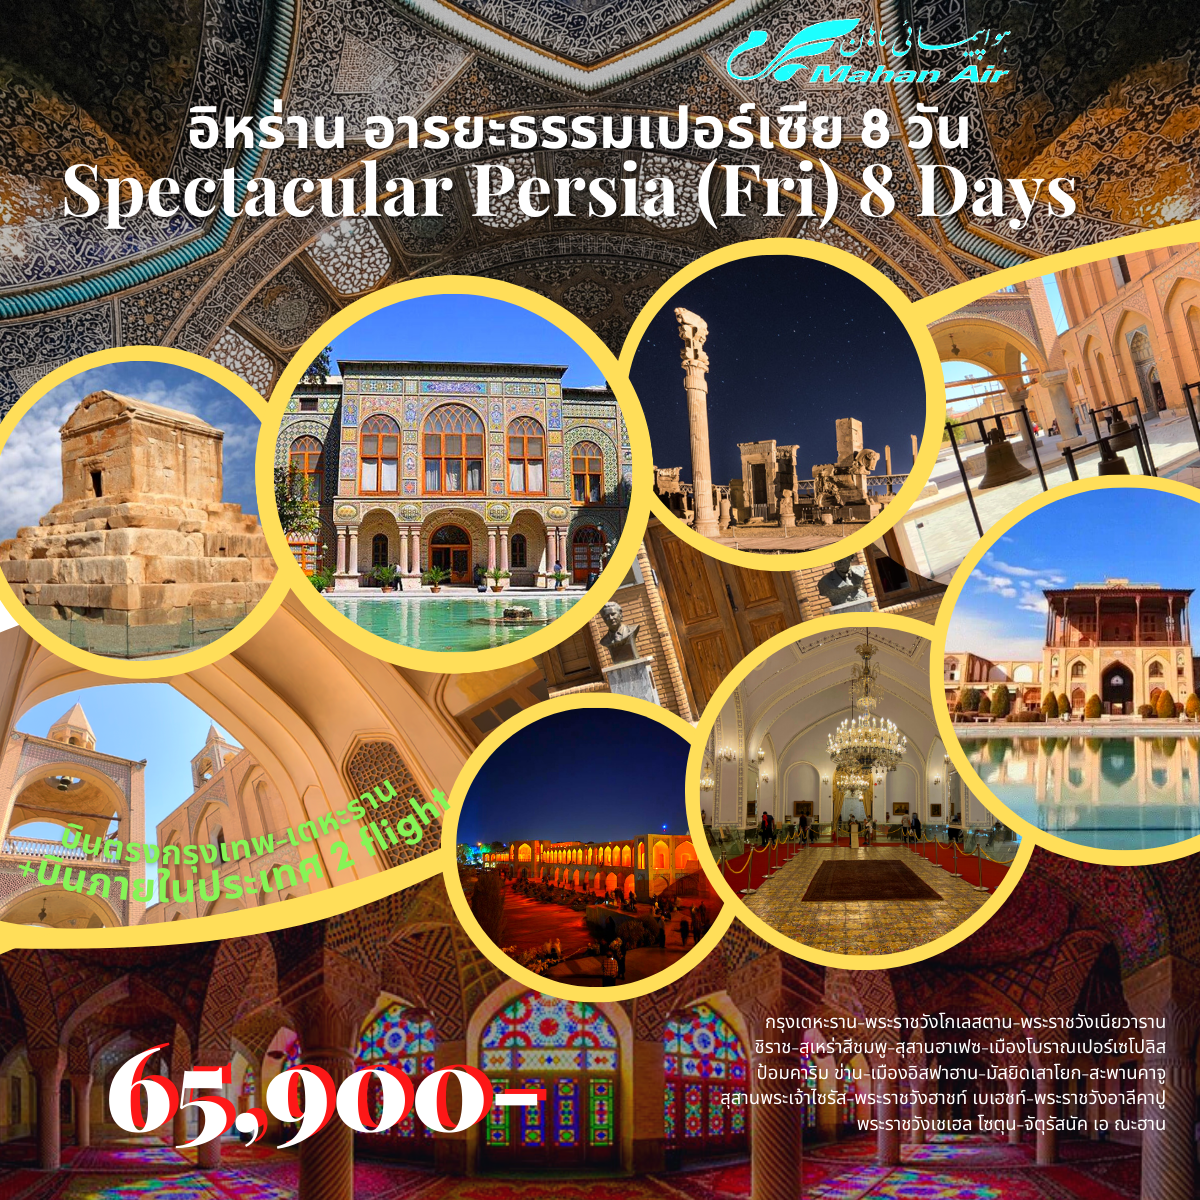 ทัวร์อิหร่าน Spectacular Persia (Fri) 8 Days 6 Nights (W5) เม.ย.66